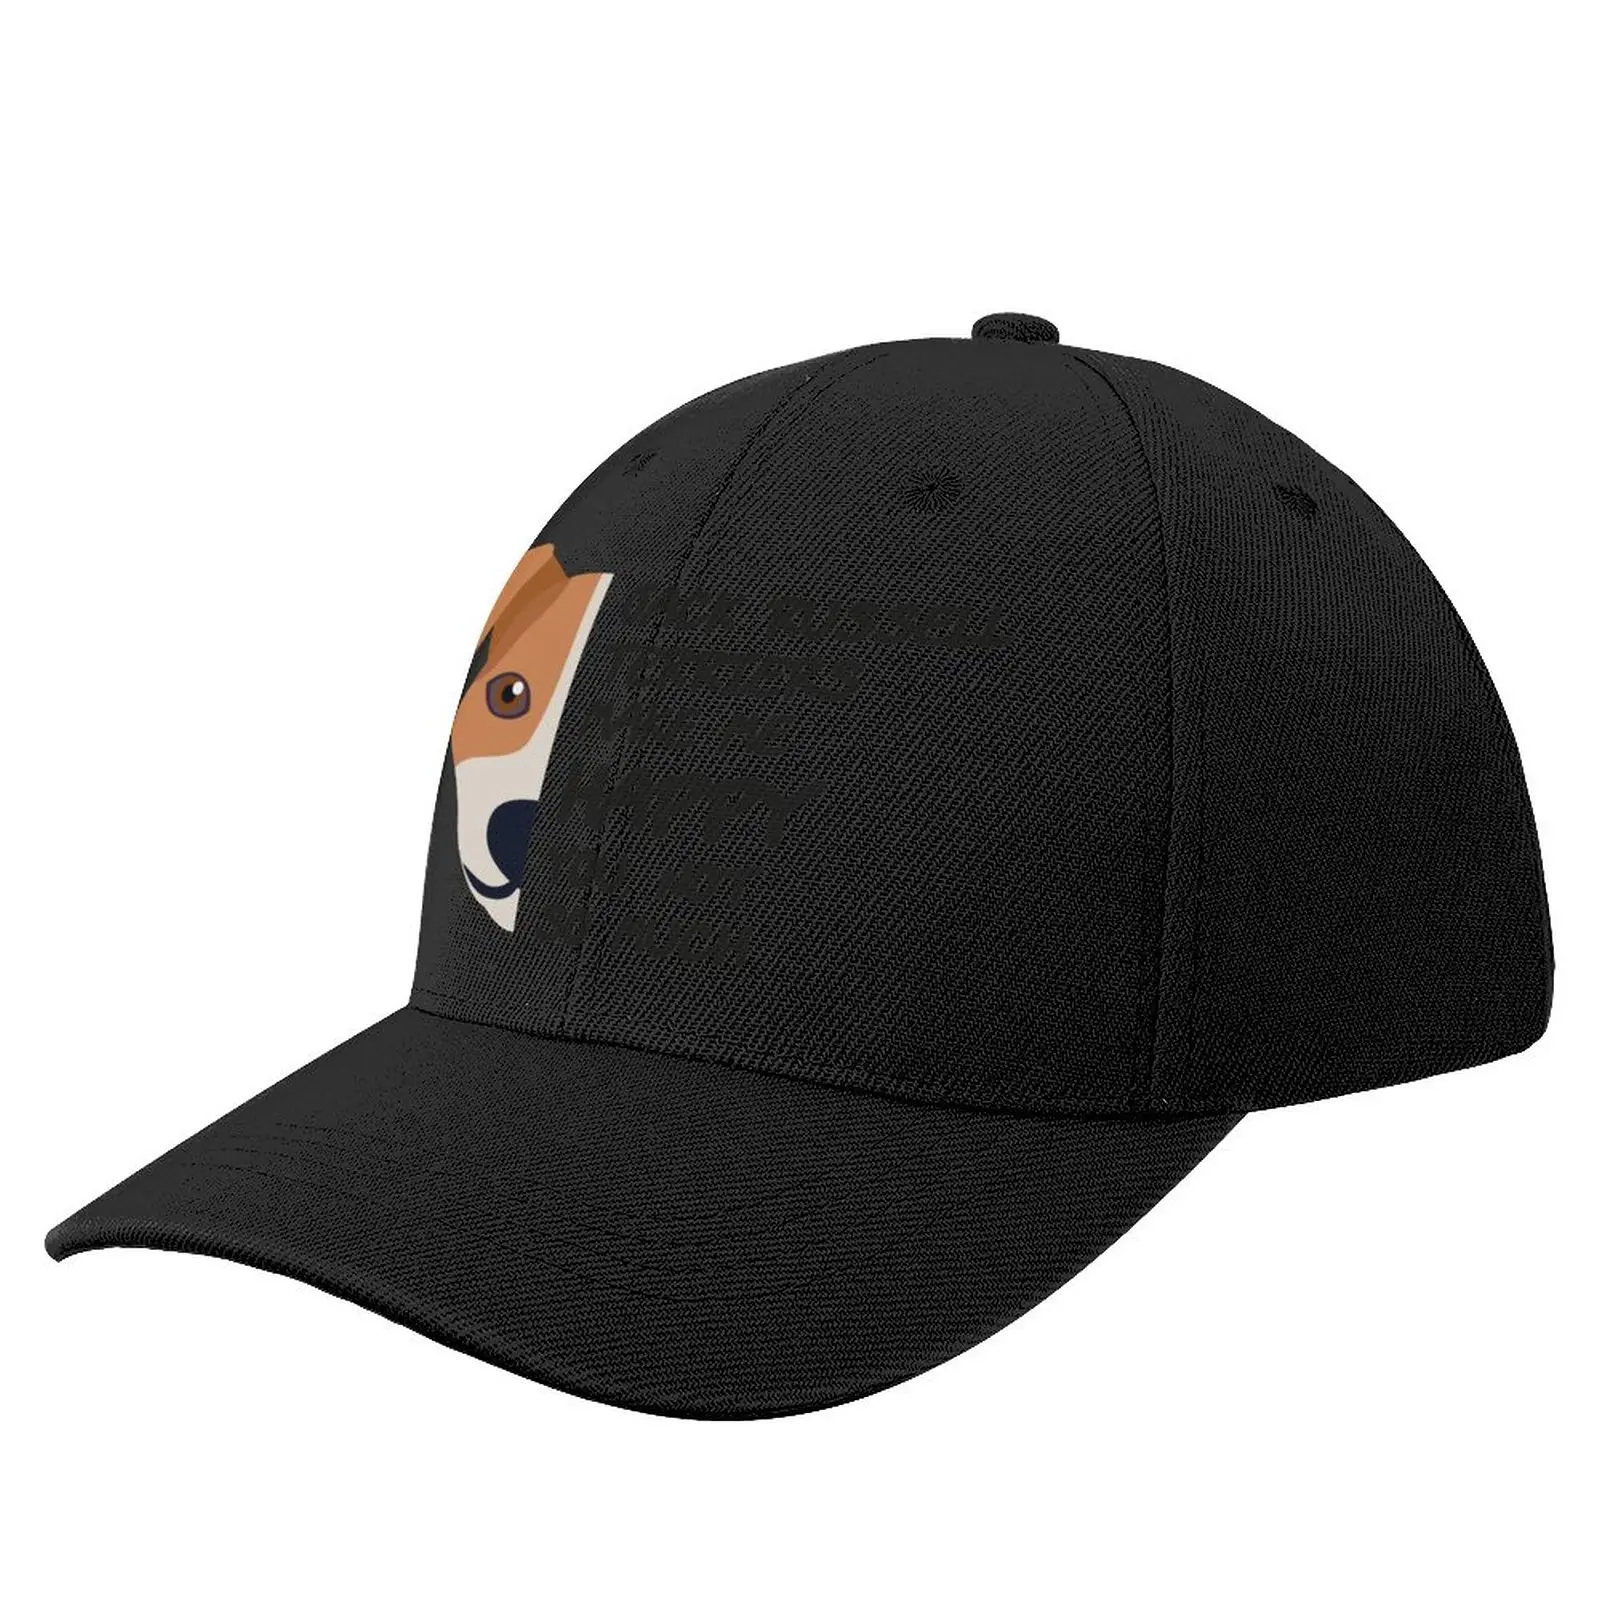 

Jack Russell Terrier Baseball Cap Bulk Orders Polyester Stylish Baseball Hat Girl Sport Blank Cap